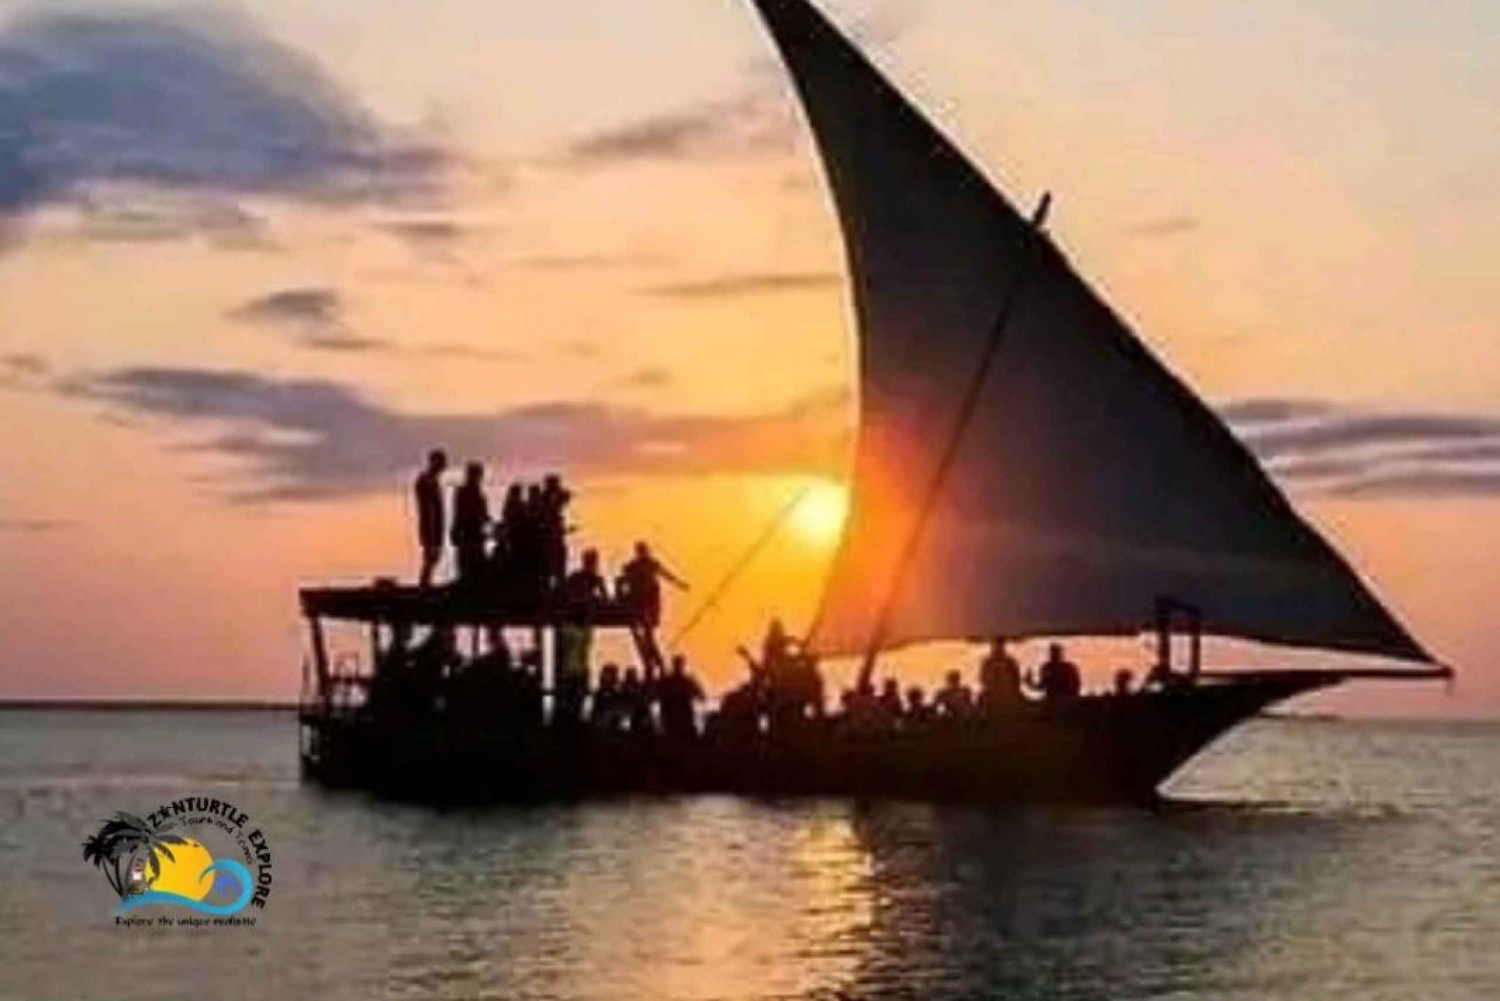 Zanzibar: crociera in dhow al tramonto da Stone town